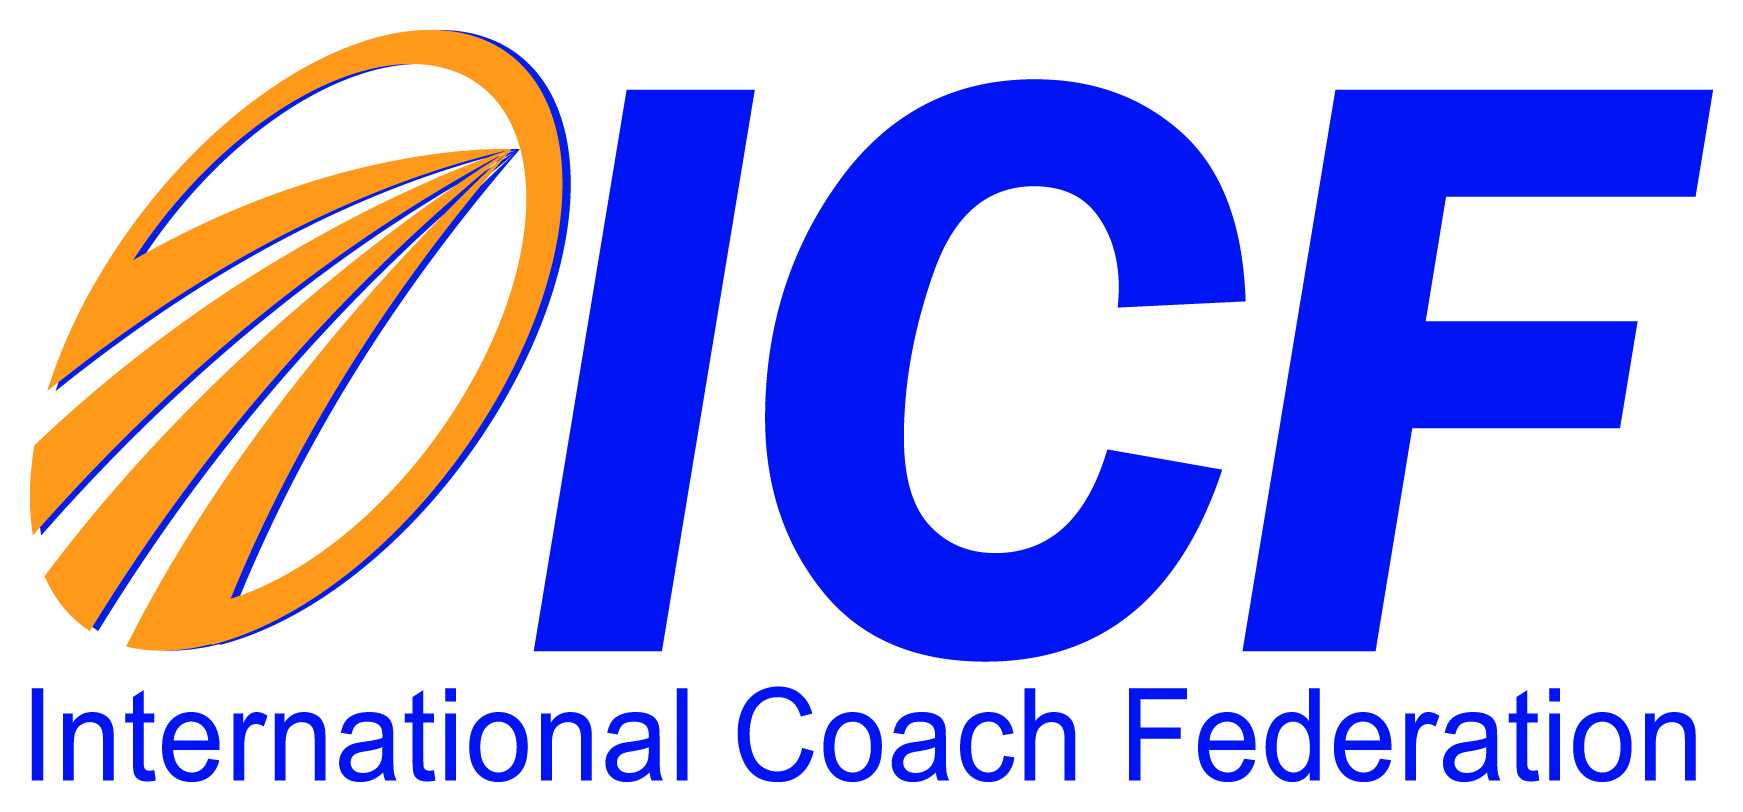 ICF ‘International Coach Federation’